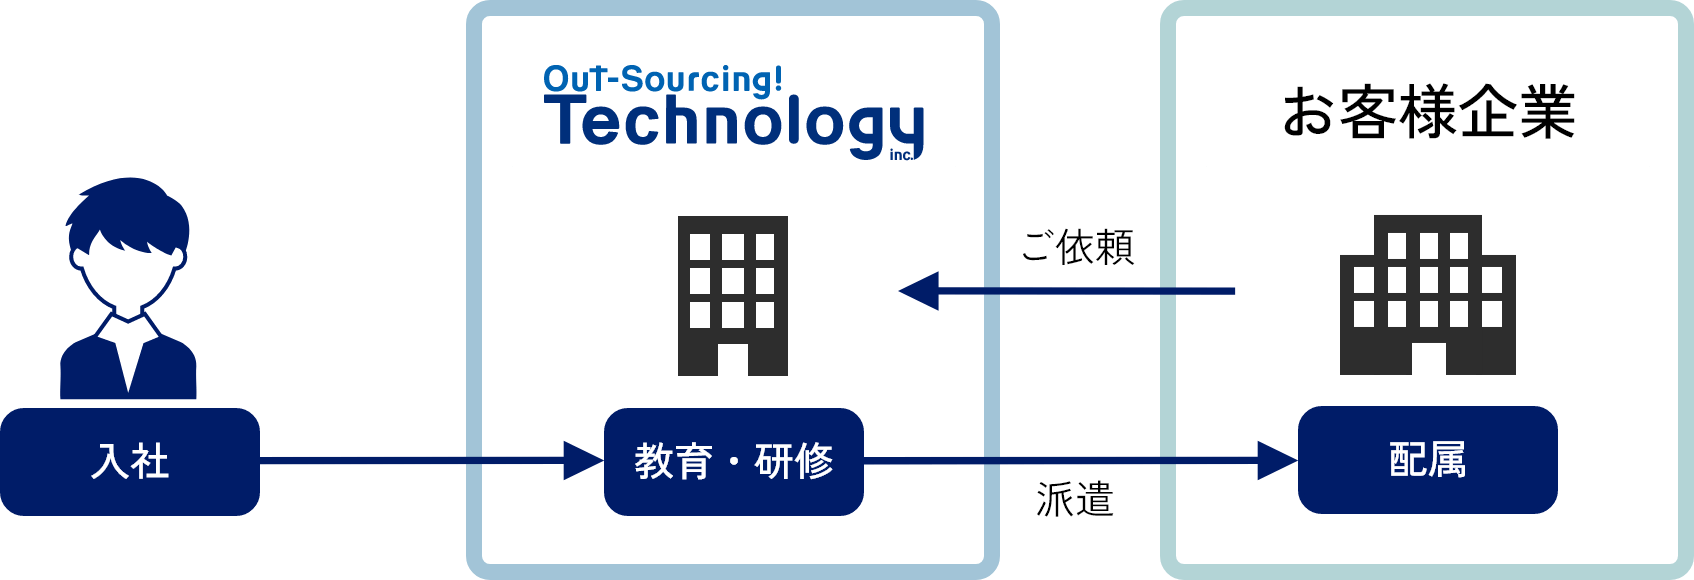 入社 Out-Sourcing! Technology inc. 教育・研修 → 派遣 お客様希望 配属 → ご依頼 Out-Sourcing! Technology inc.